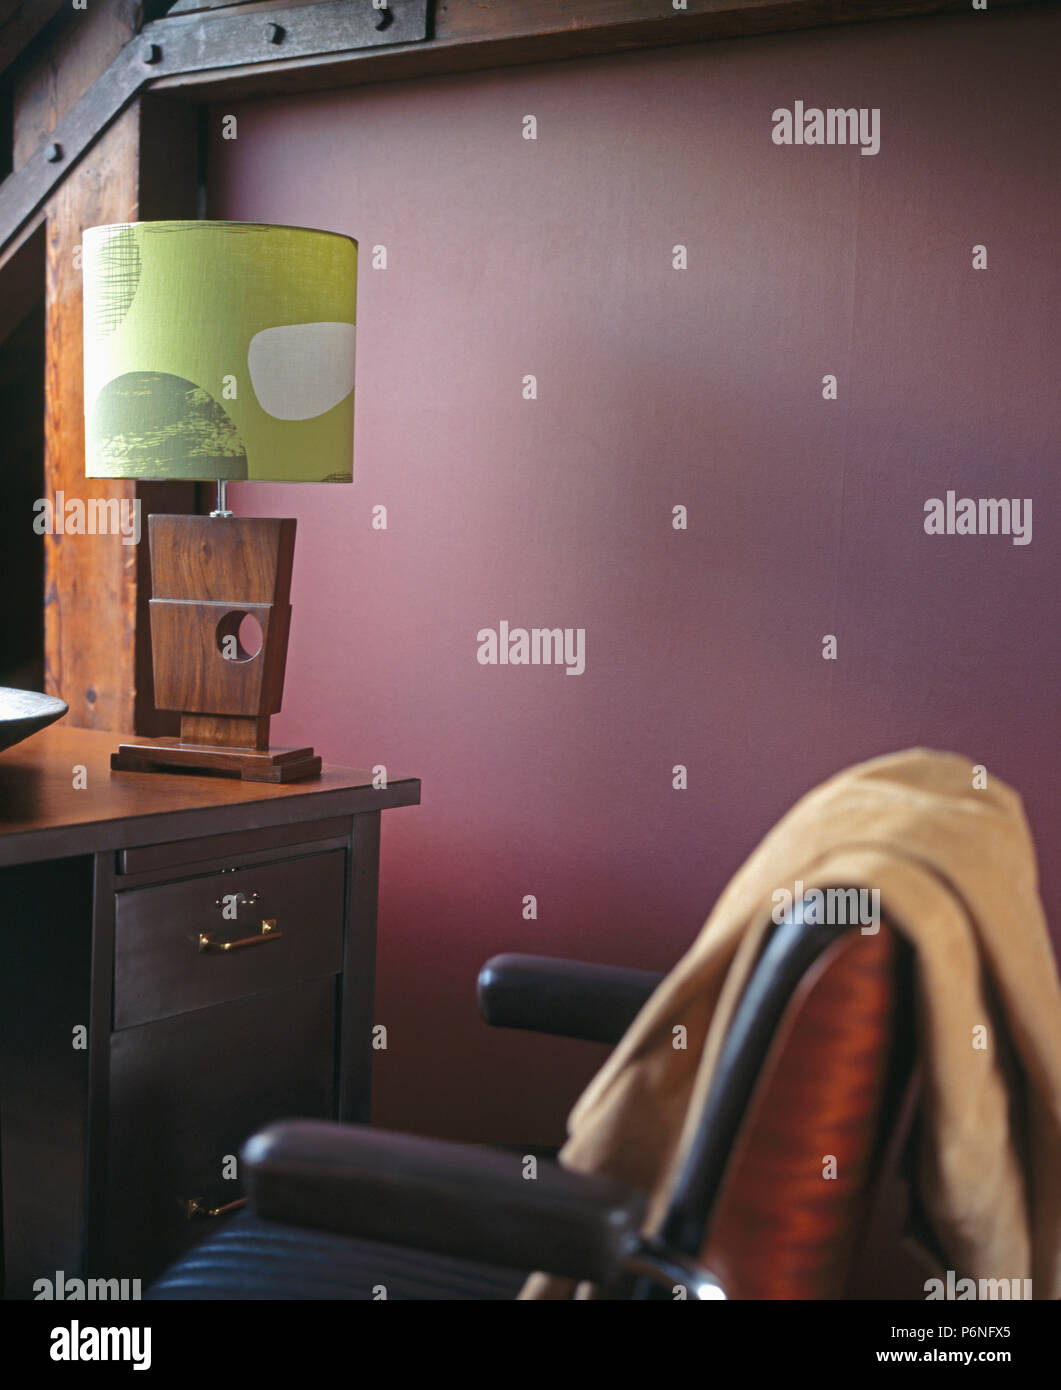 Lampe en bois de style années 50 sur 24 dans l'étude de conversion loft violet Banque D'Images